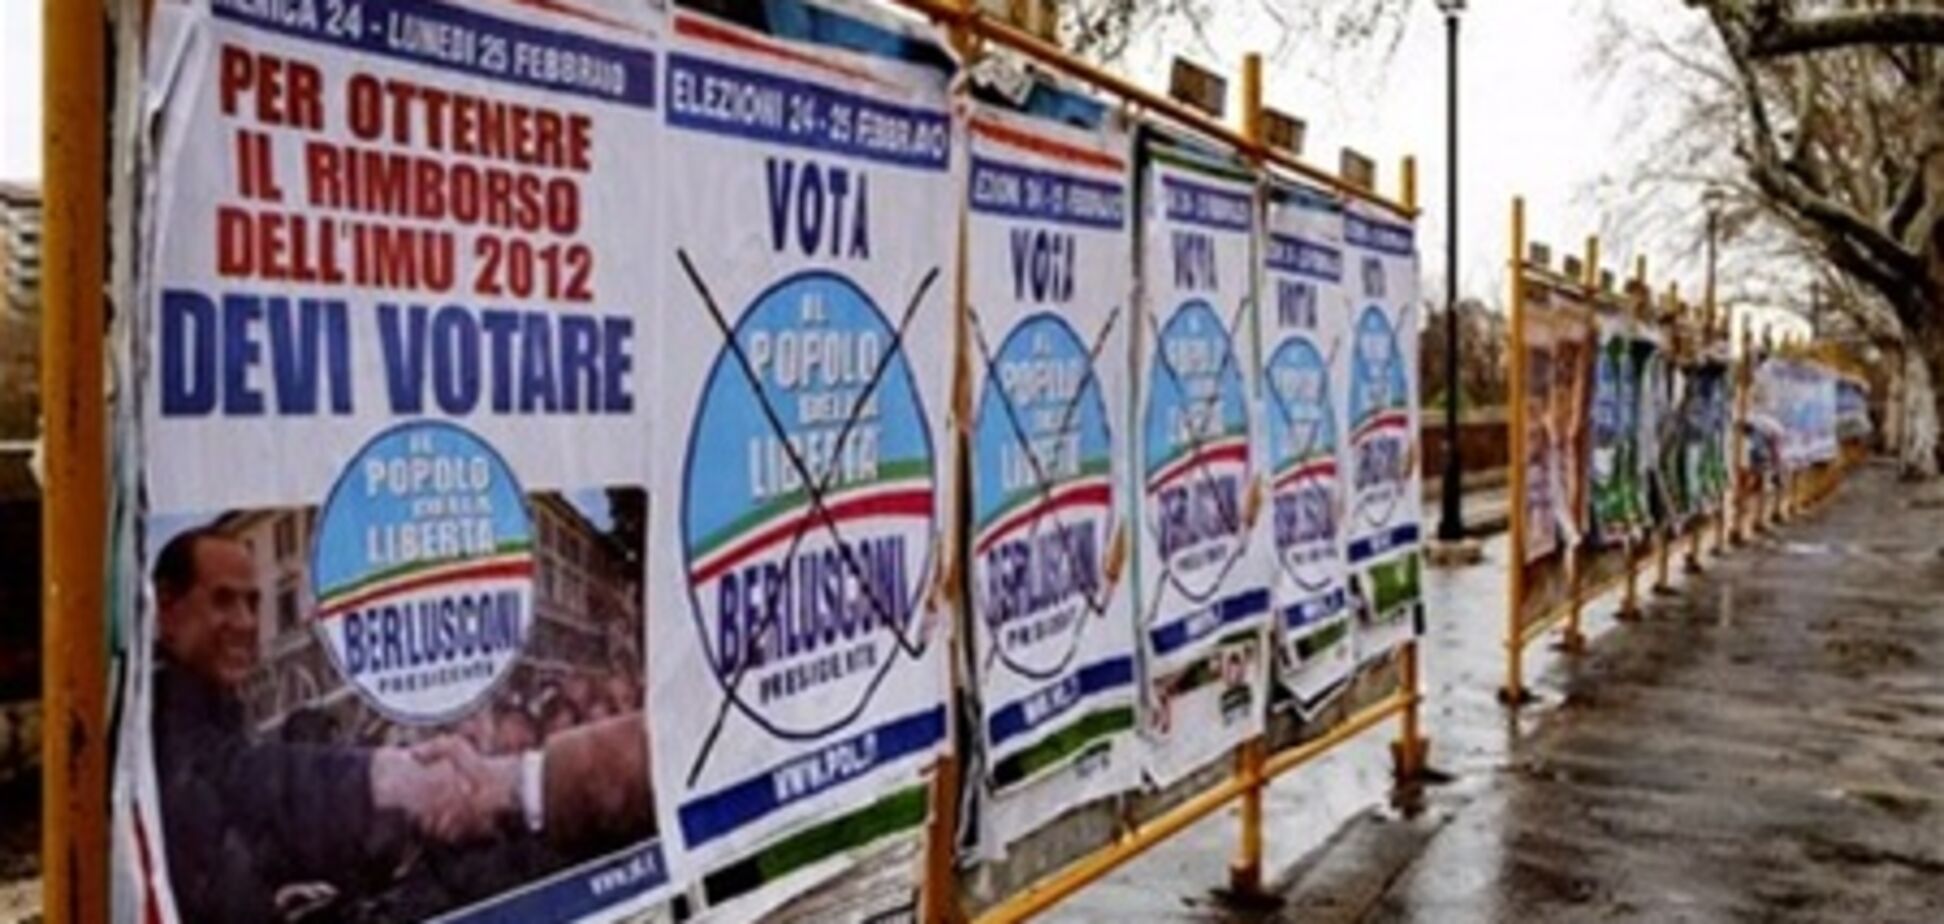 Італійці голосують неактивно - виборчком країни